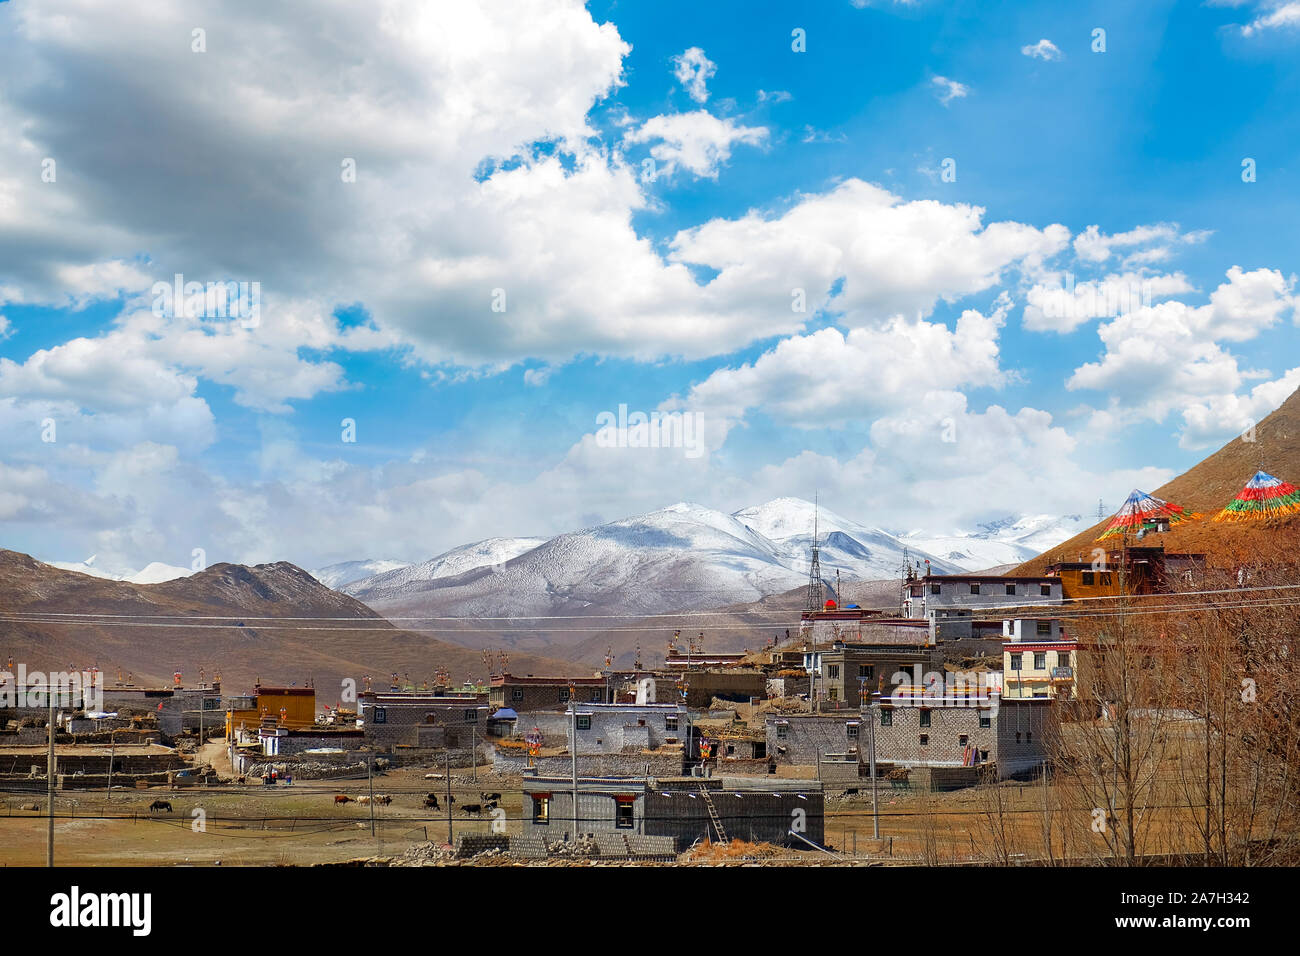 Vue de village traditionnelle tibétaine contre l'Himalaya, contre un ciel bleu couvert par des nuages blancs. Banque D'Images